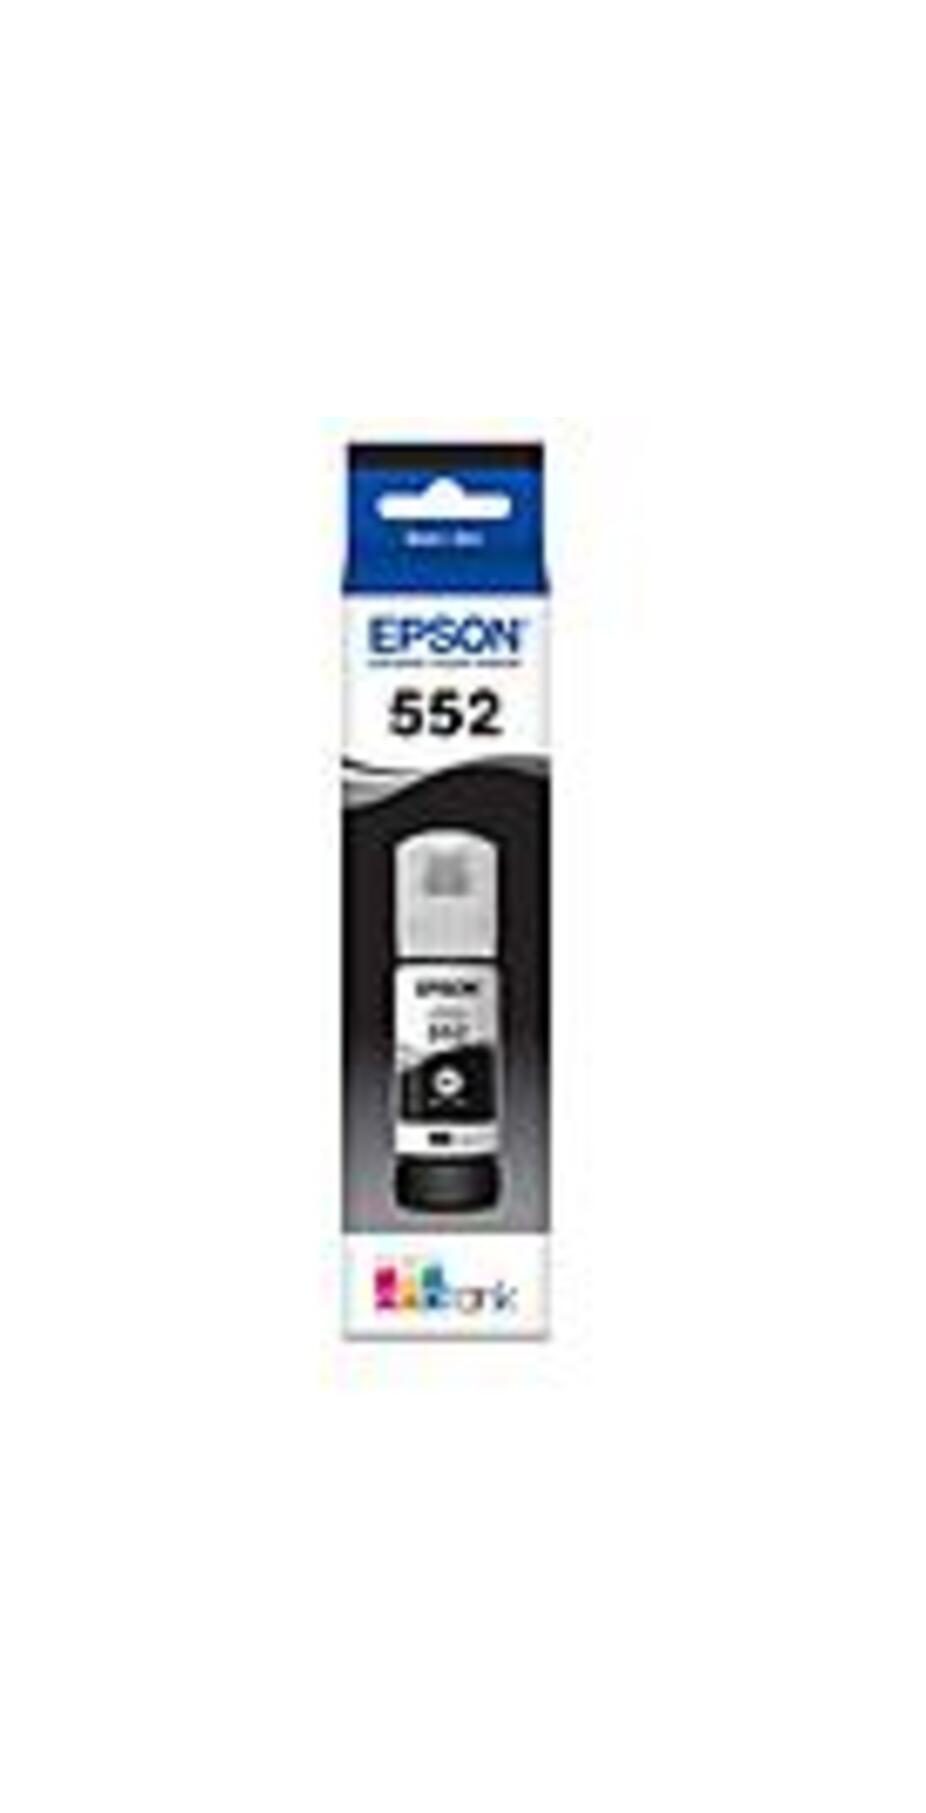 Image of Epson T552 Ink Refill Kit - Inkjet - Pigment Black